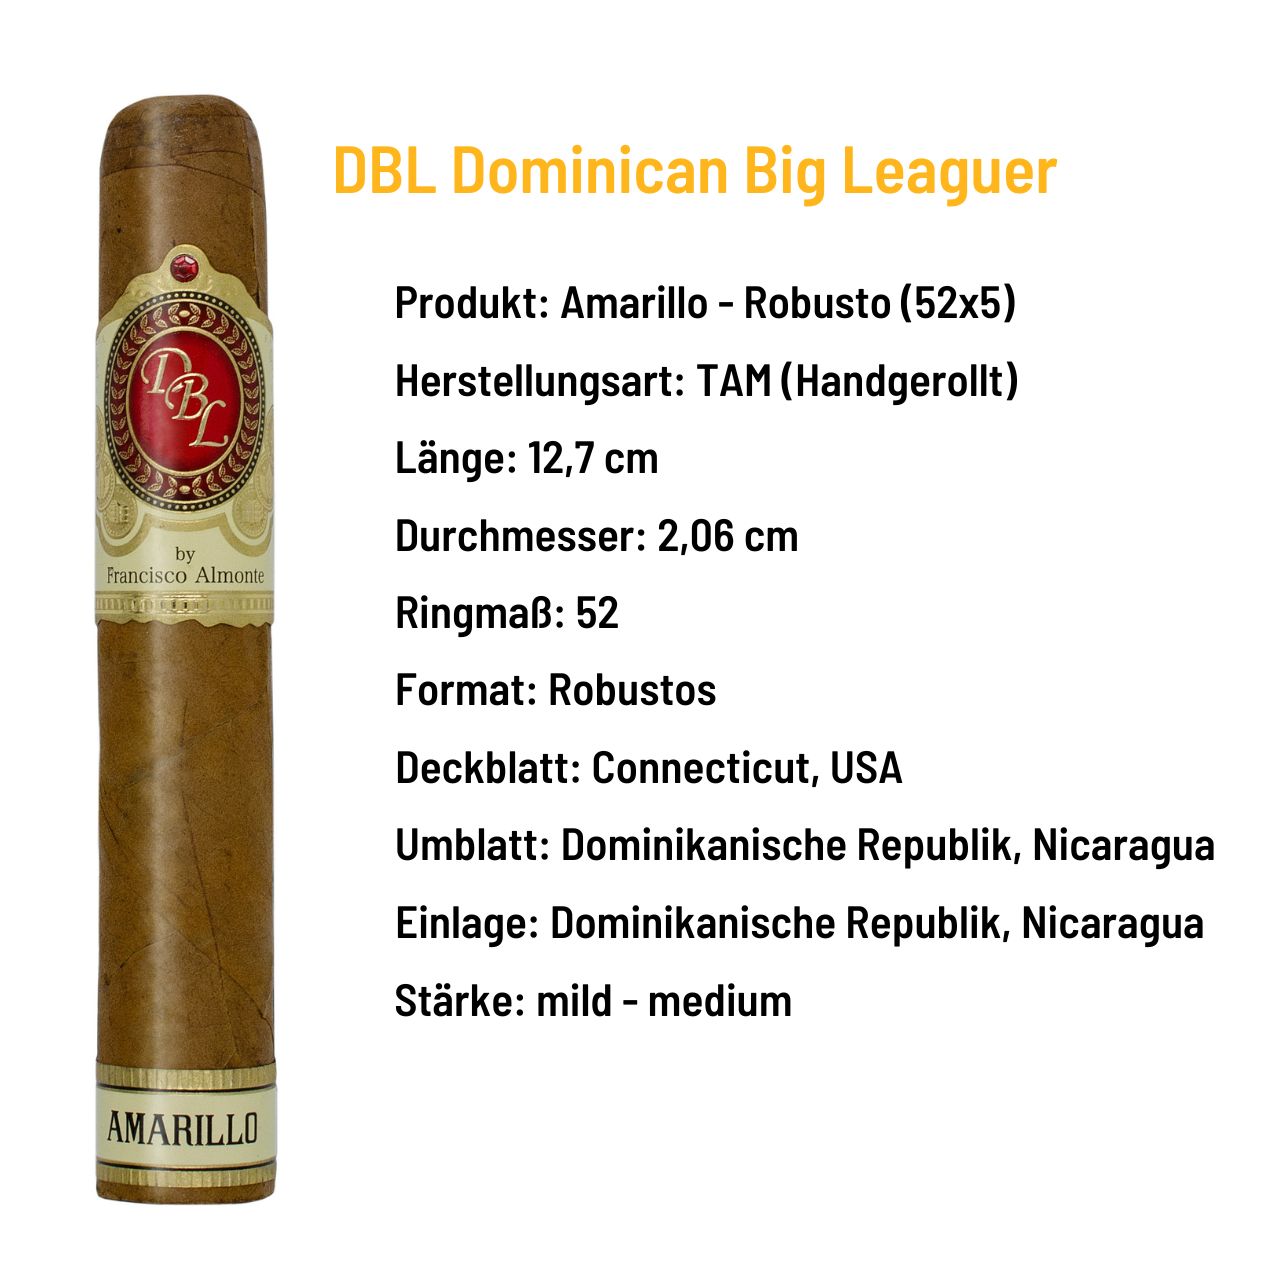 DBL Dominican Big Leaguer - Amarillo Robusto - Dominikanische Republik